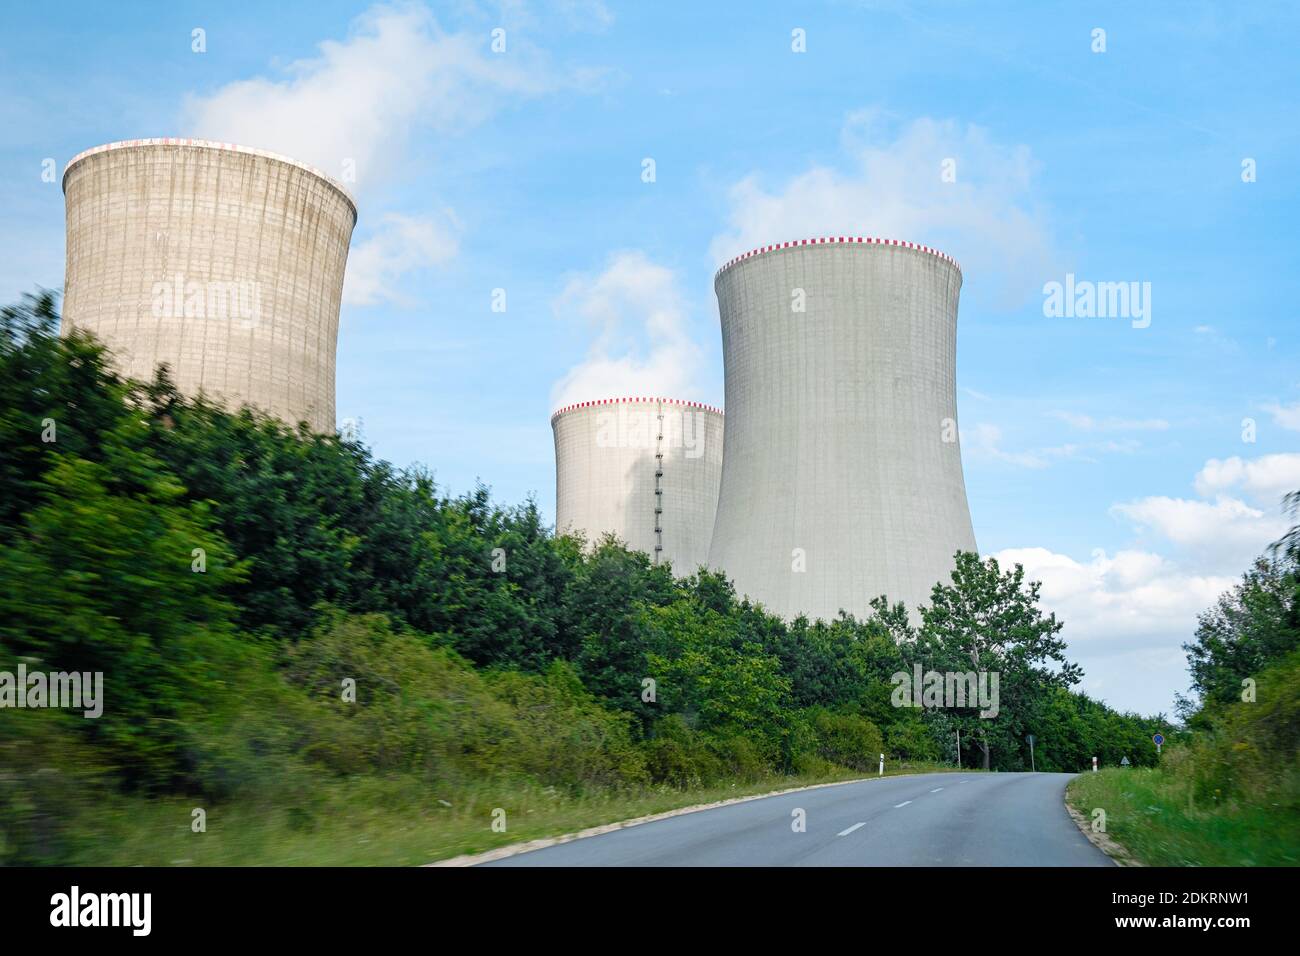 Trois cheminées de centrale nucléaire près de la route. Banque D'Images